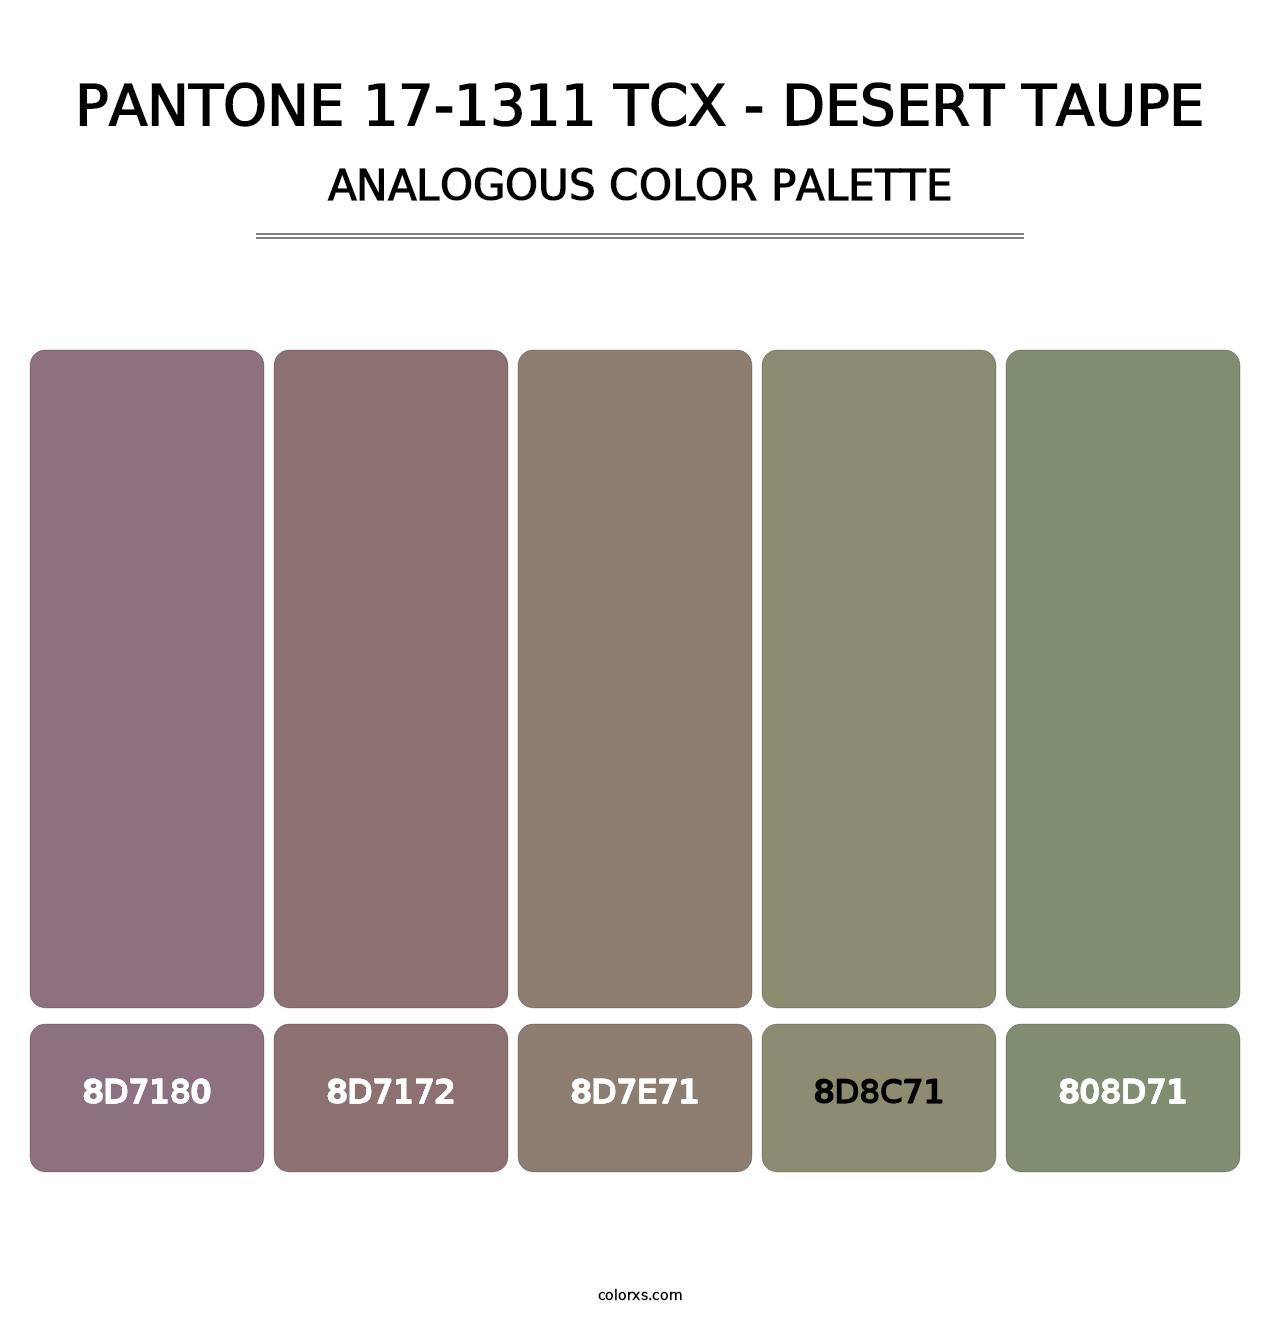 PANTONE 17-1311 TCX - Desert Taupe - Analogous Color Palette